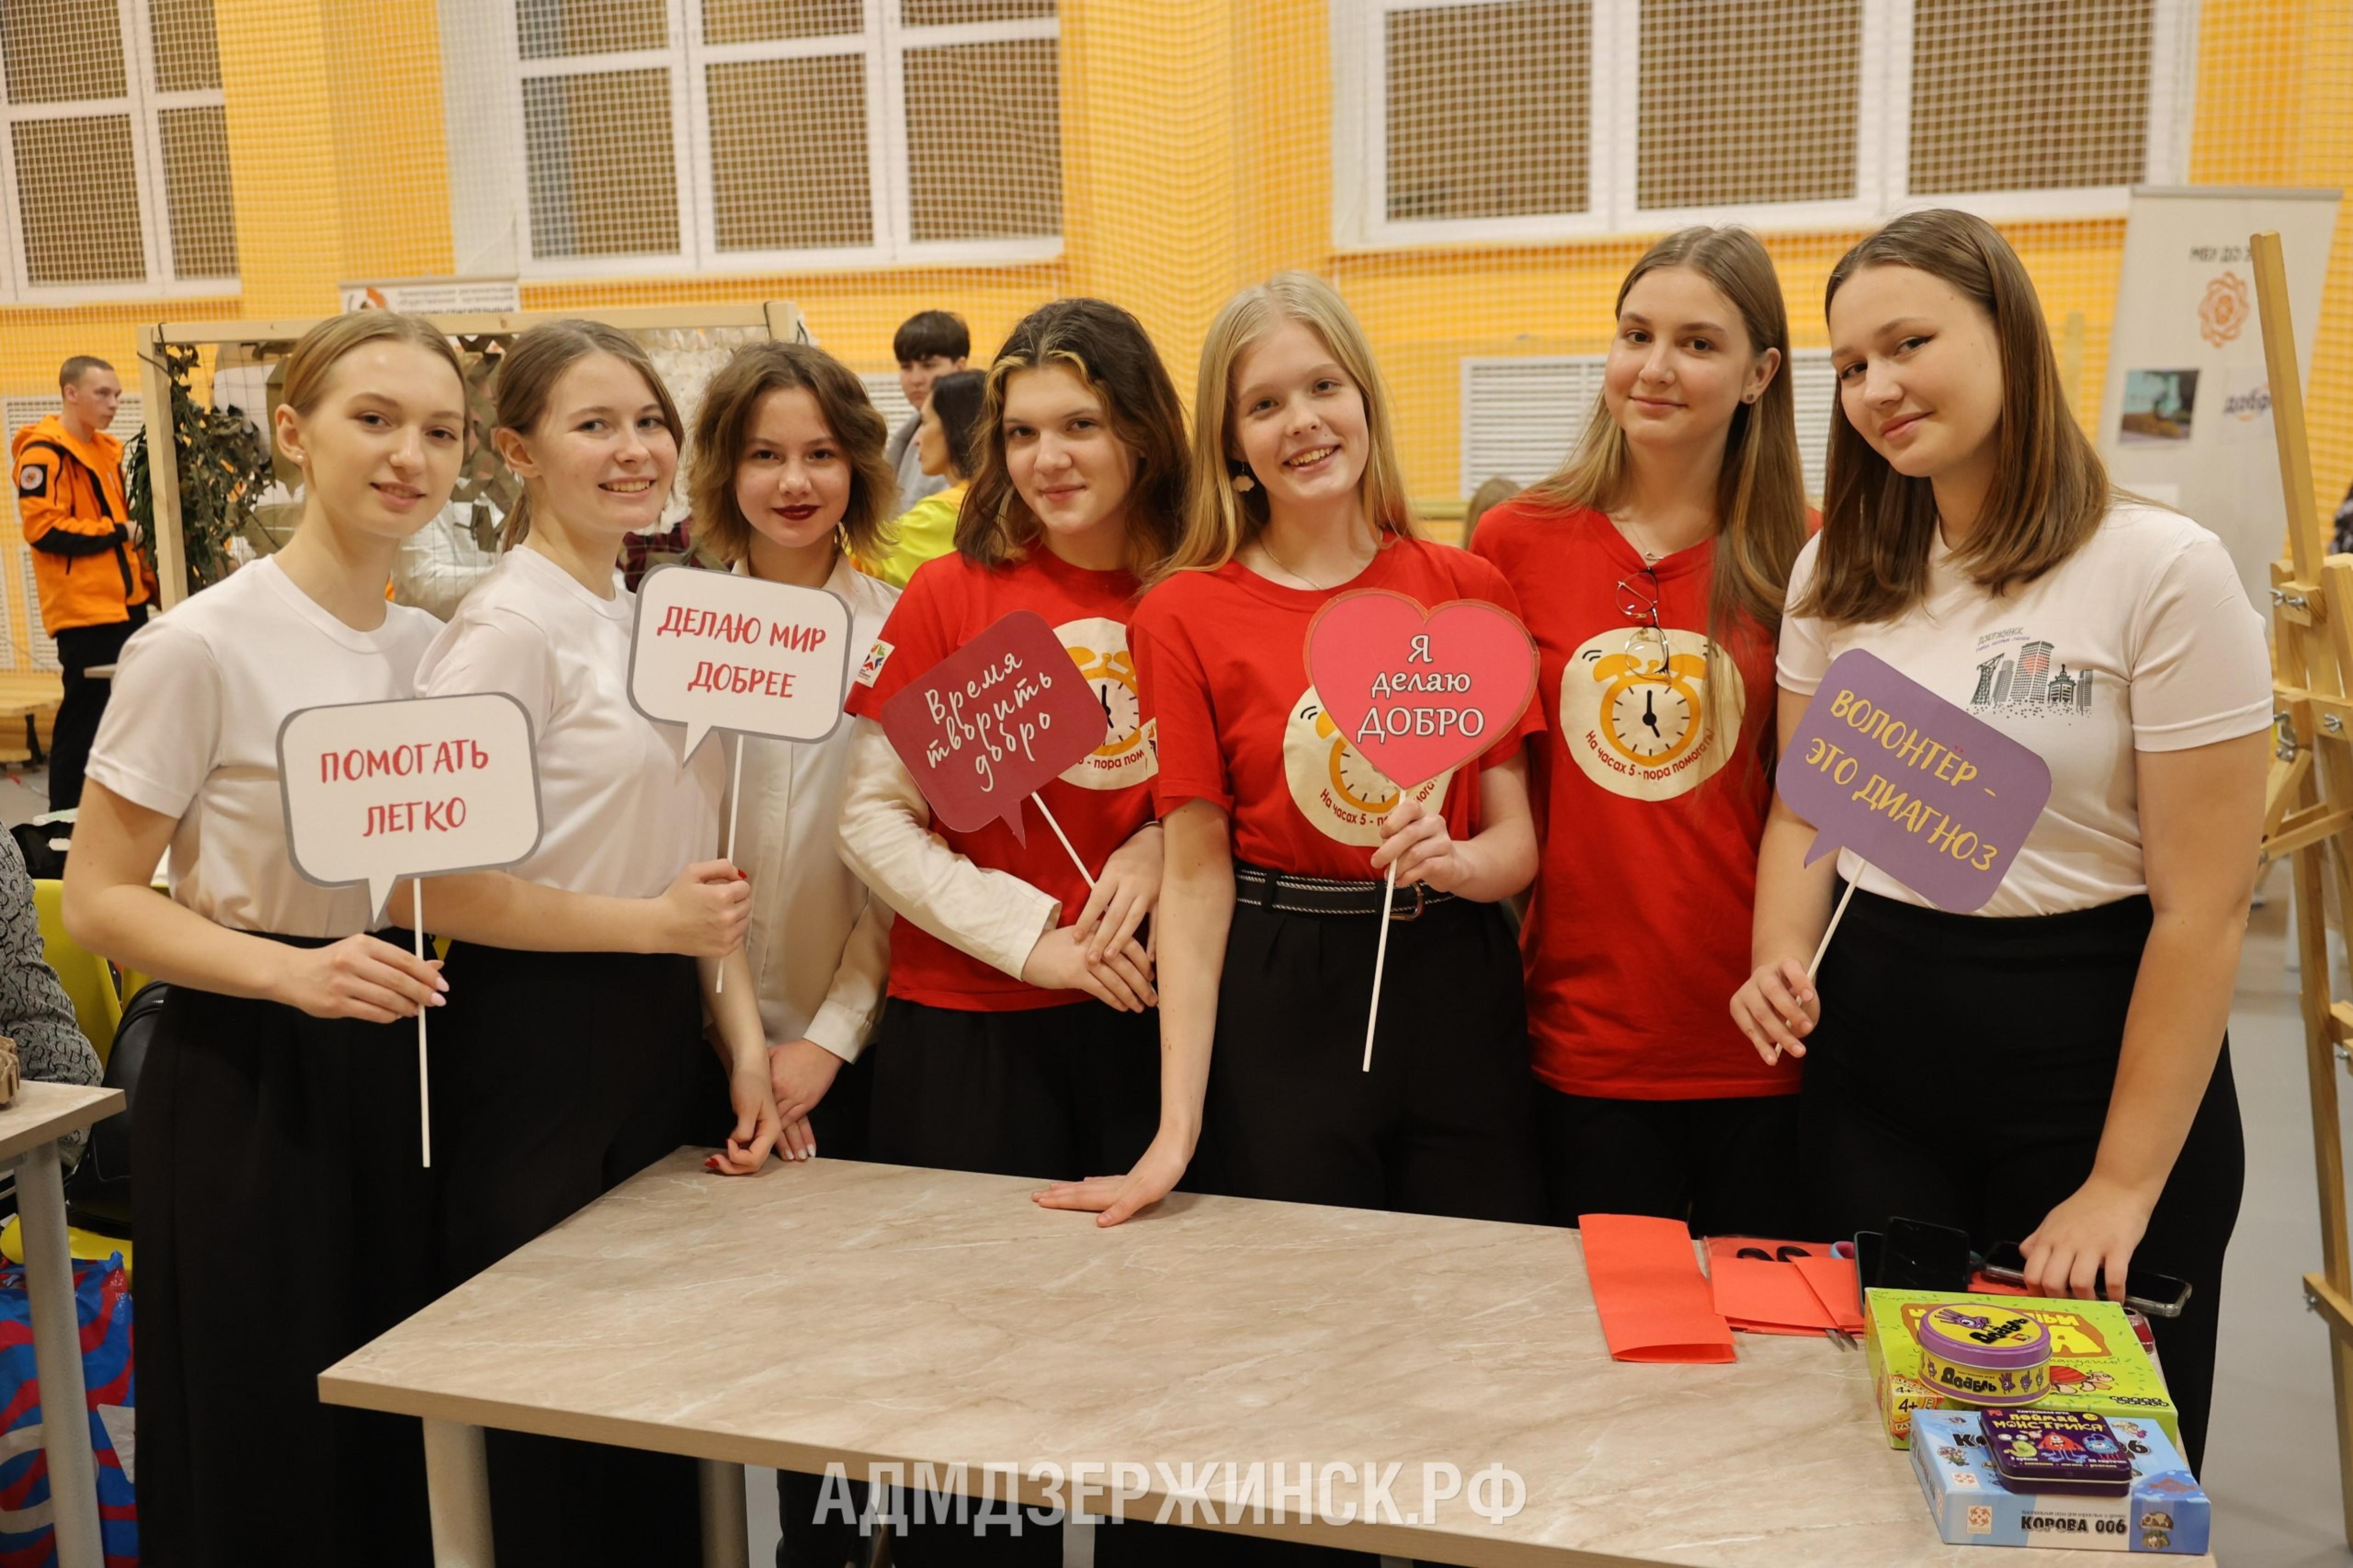 Более 200 человек объединил фестиваль «Город добрых людей» в Дзержинске